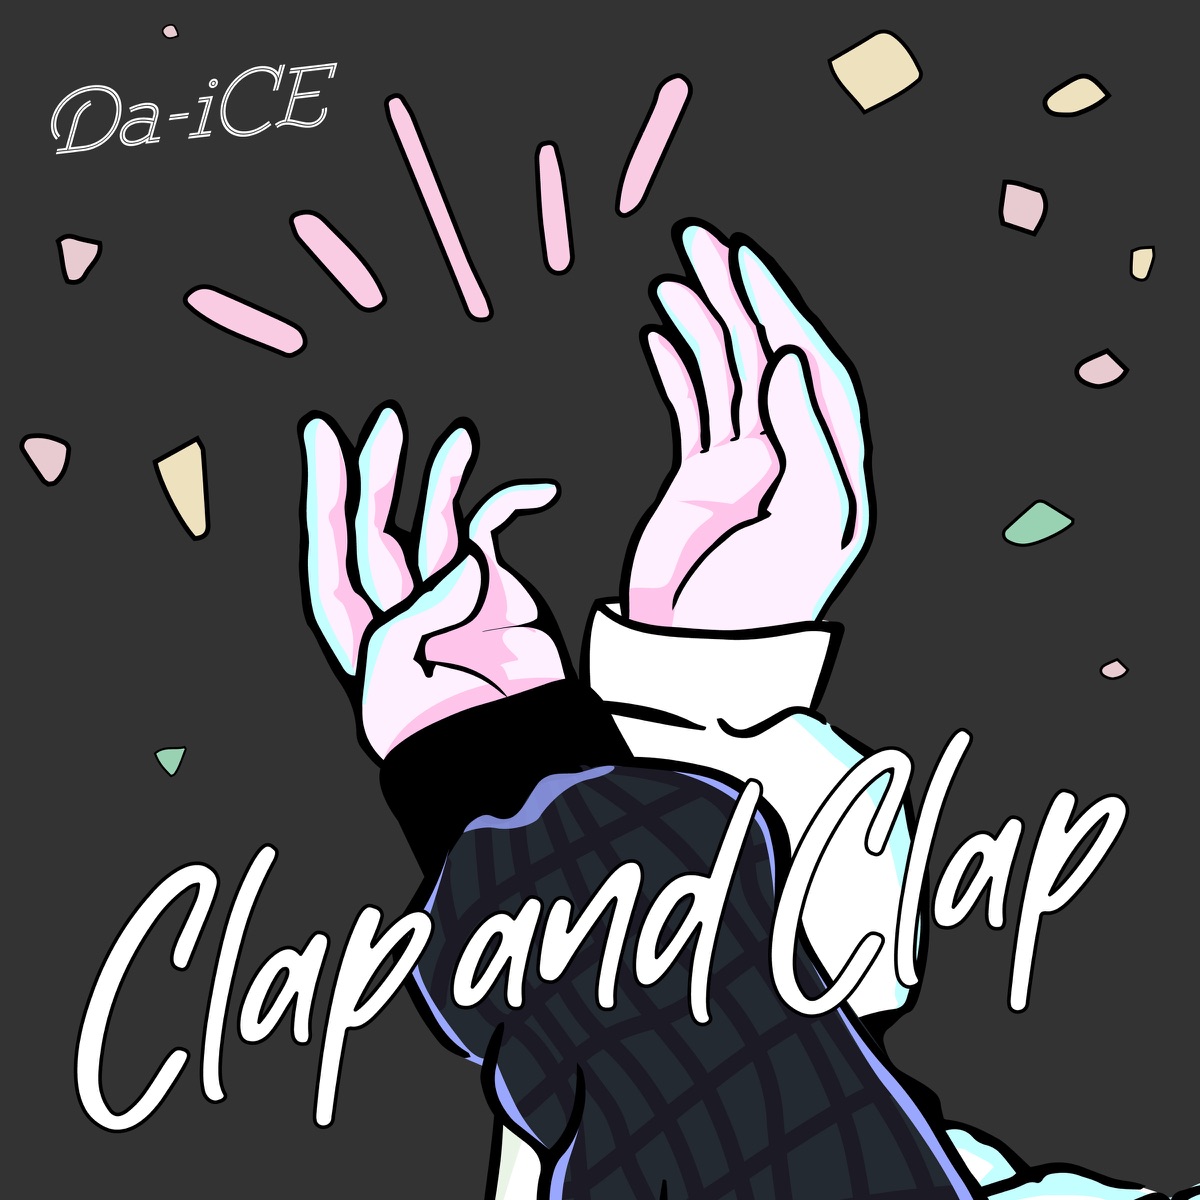 『Da-iCE - Clap and Clap』収録の『Clap and Clap』ジャケット